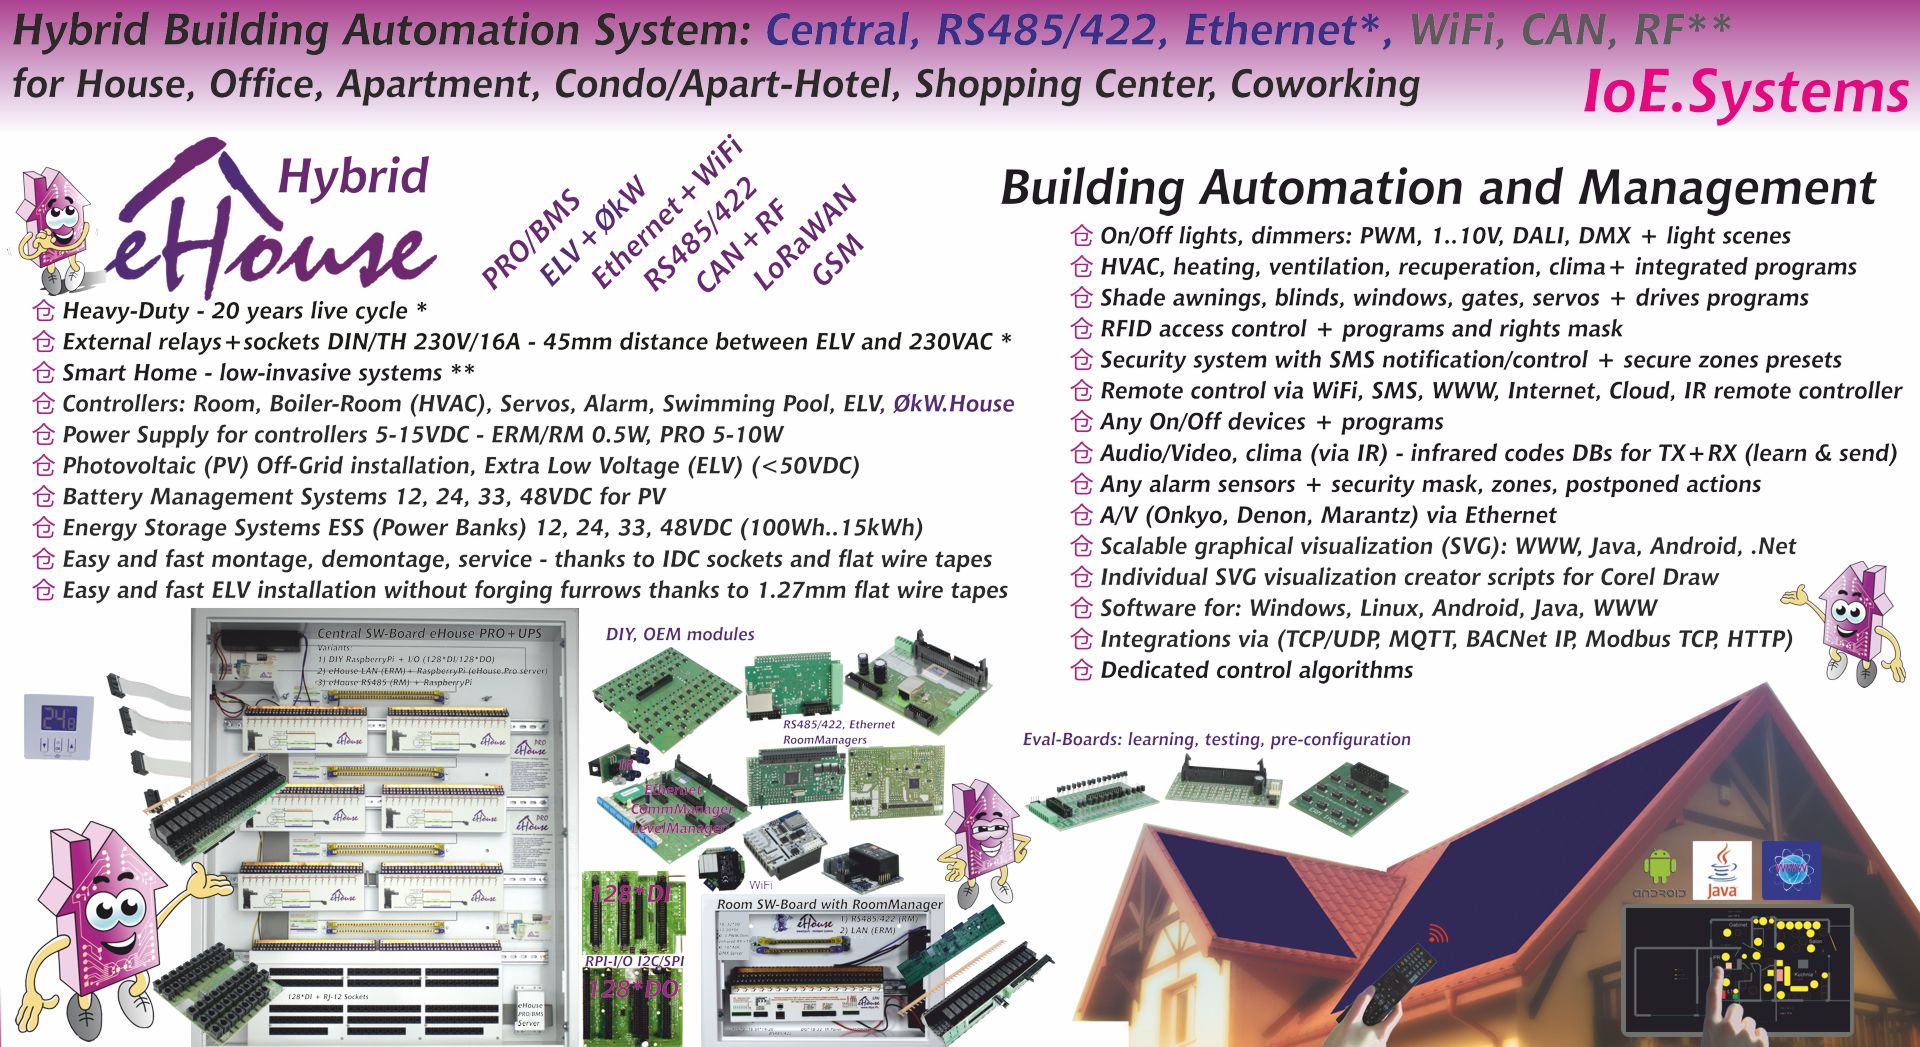 ईहाउस हाइब्रिड स्मार्ट होम, बिल्डिंग ऑटोमेशन सिस्टम System